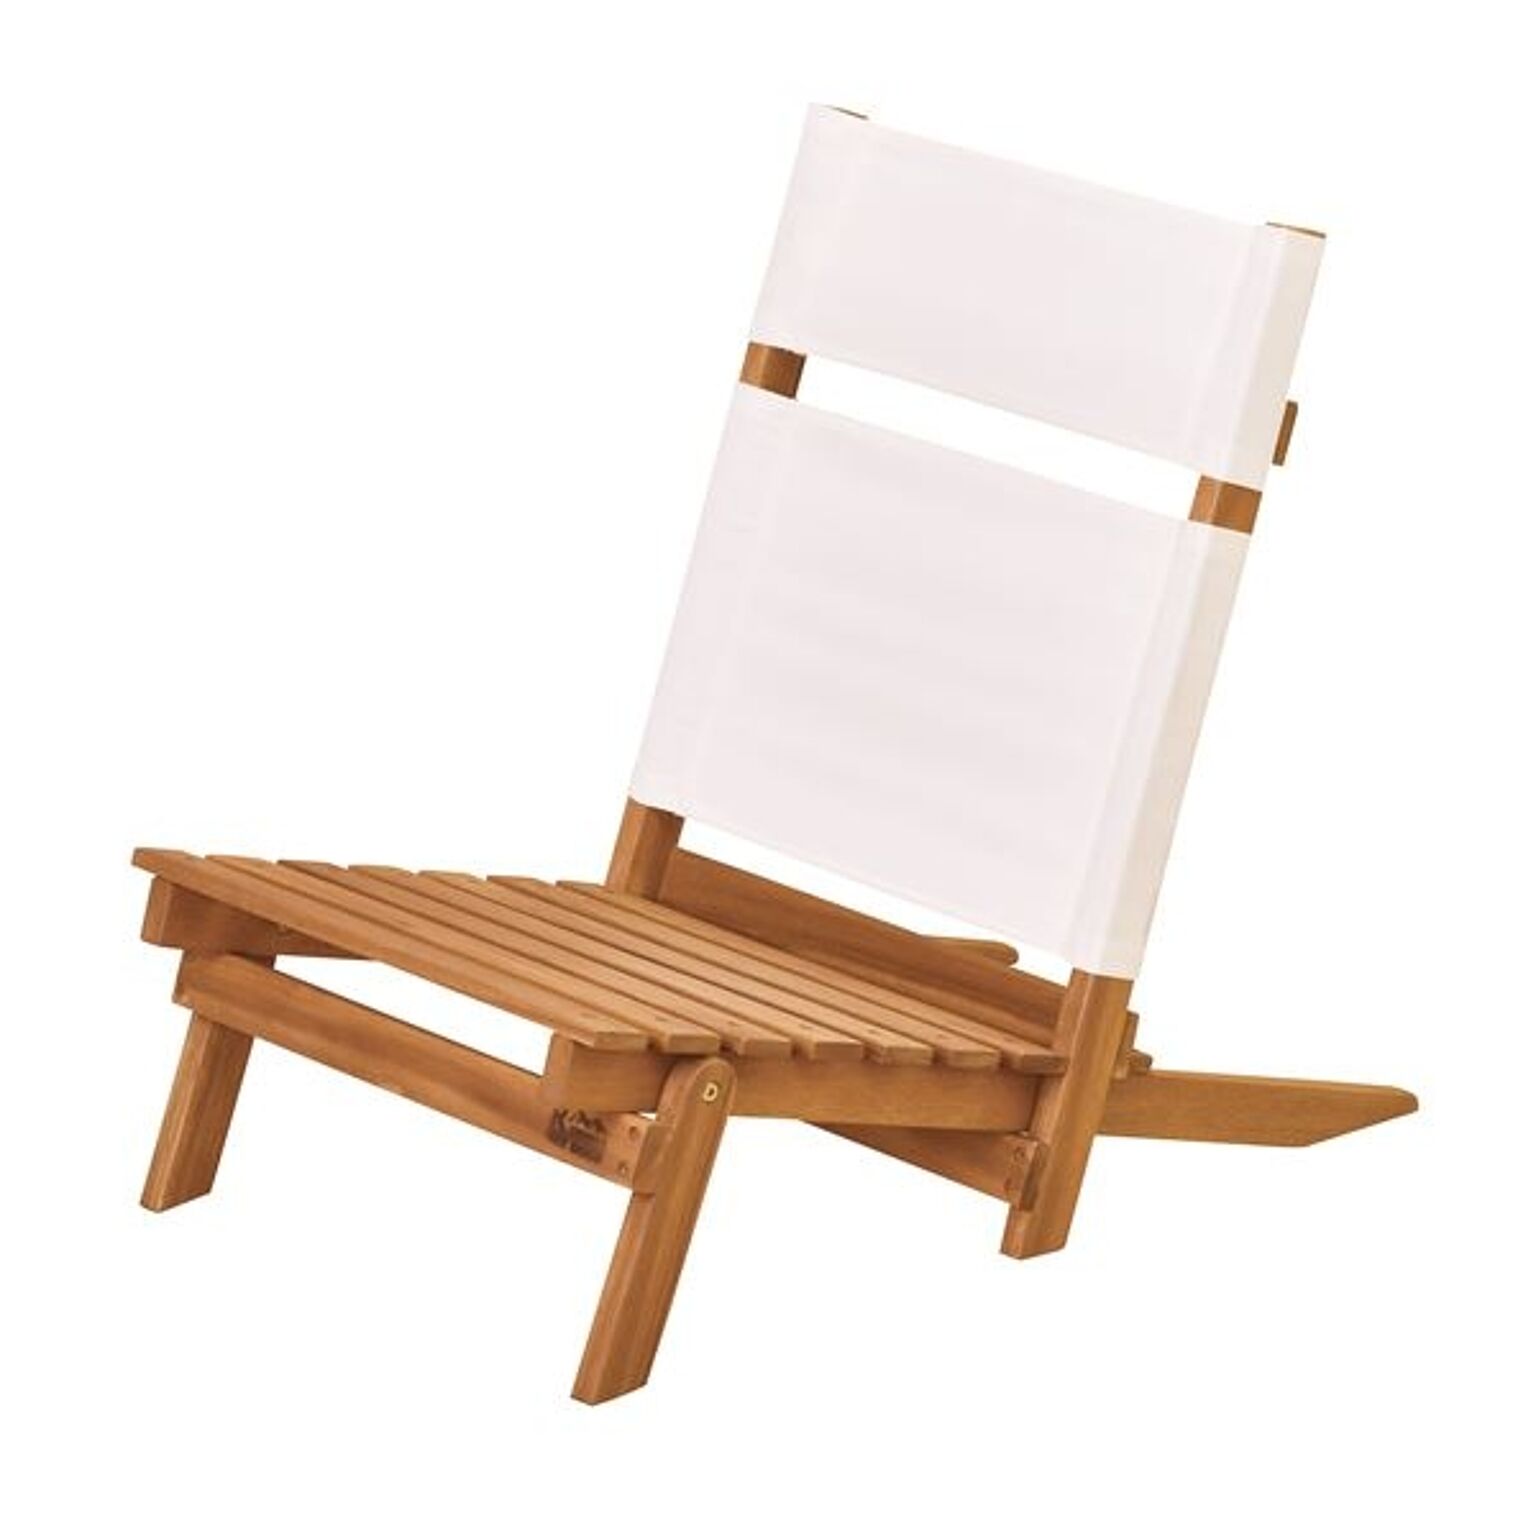 天然木デッキチェア(組み立て式椅子) 木製/アカシア NX-515 〔アウトドア キャンプ お庭 テラス〕